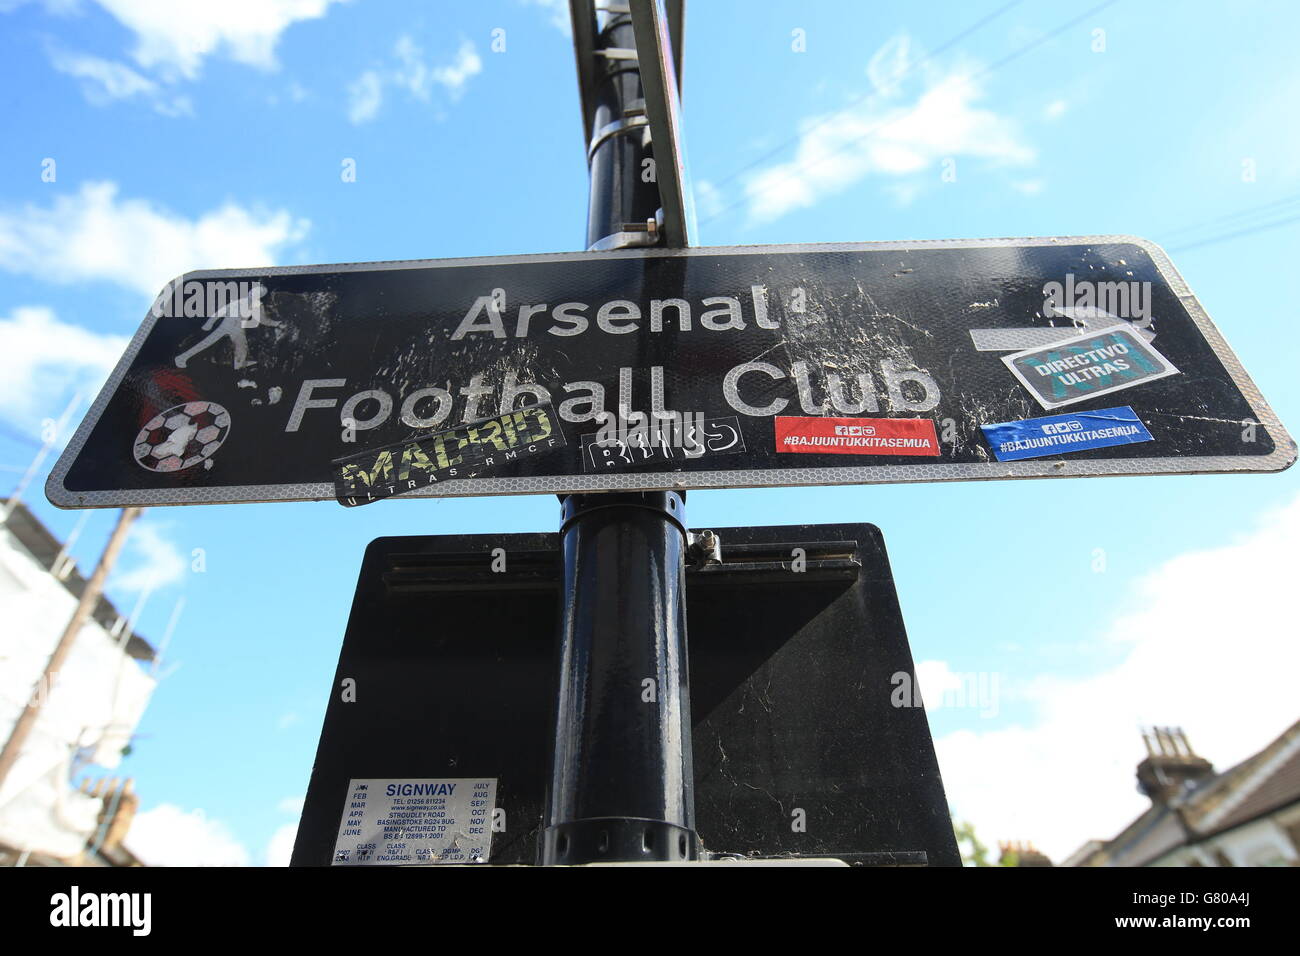 Calcio - Barclays Premier League - Arsenal / Sunderland - Emirates Stadium. Una vista generale di un cartello stradale che indica la strada per l'Arsenal FC prima della partita della Barclays Premier League all'Emirates Stadium di Londra. Foto Stock